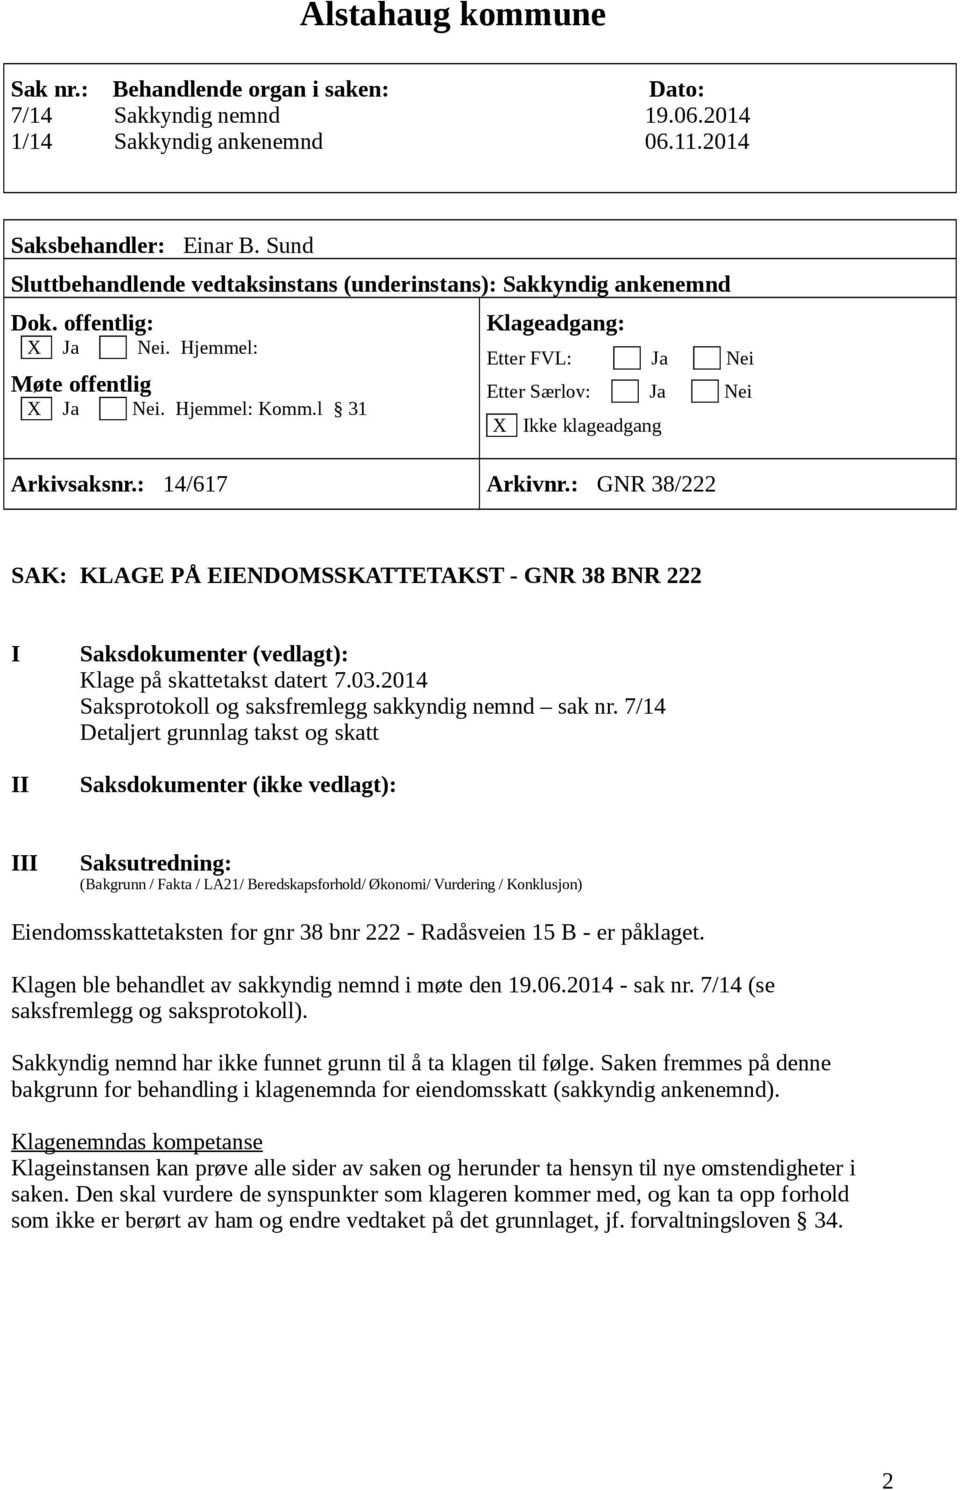 7/14 Eiendomsskattetaksten for gnr 38 bnr 222 - Radåsveien 15 B - er påklaget. Klagen ble behandlet av sakkyndig nemnd i møte den 19.06.2014 - sak nr. 7/14 (se saksfremlegg og saksprotokoll).